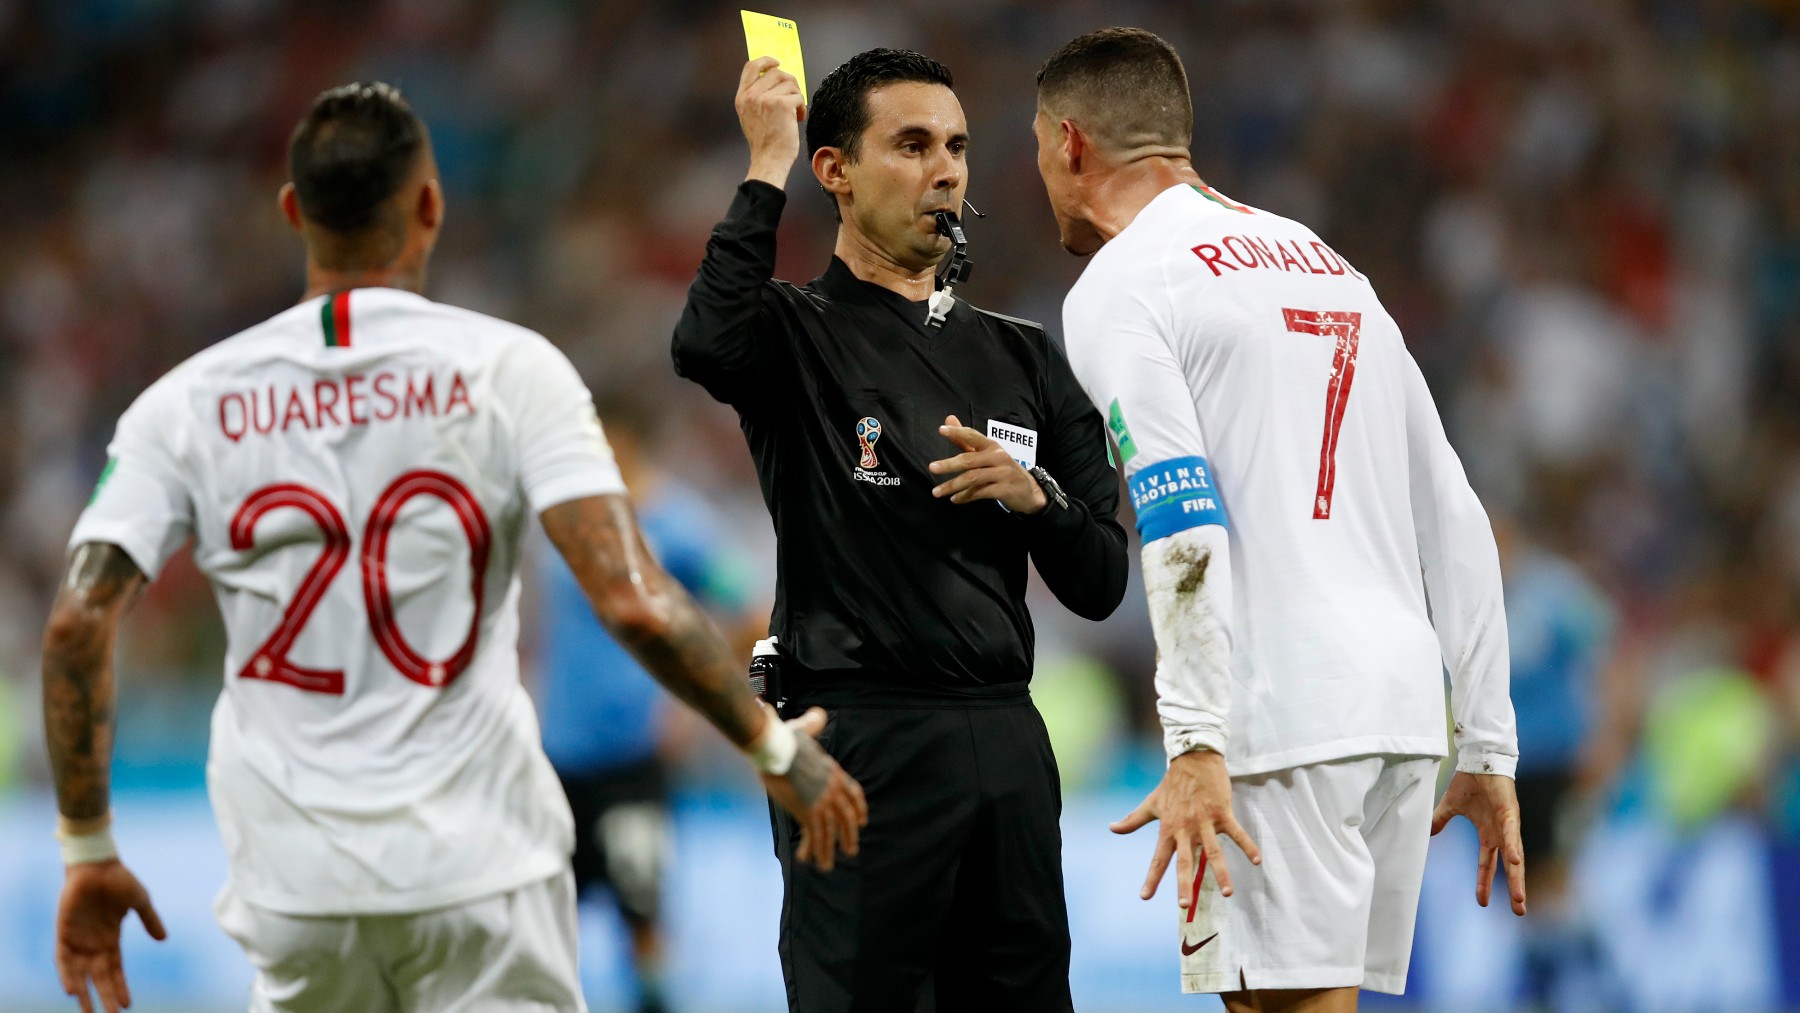 César Ramos le muestra una cartulina a Cristiano Ronaldo (Getty)